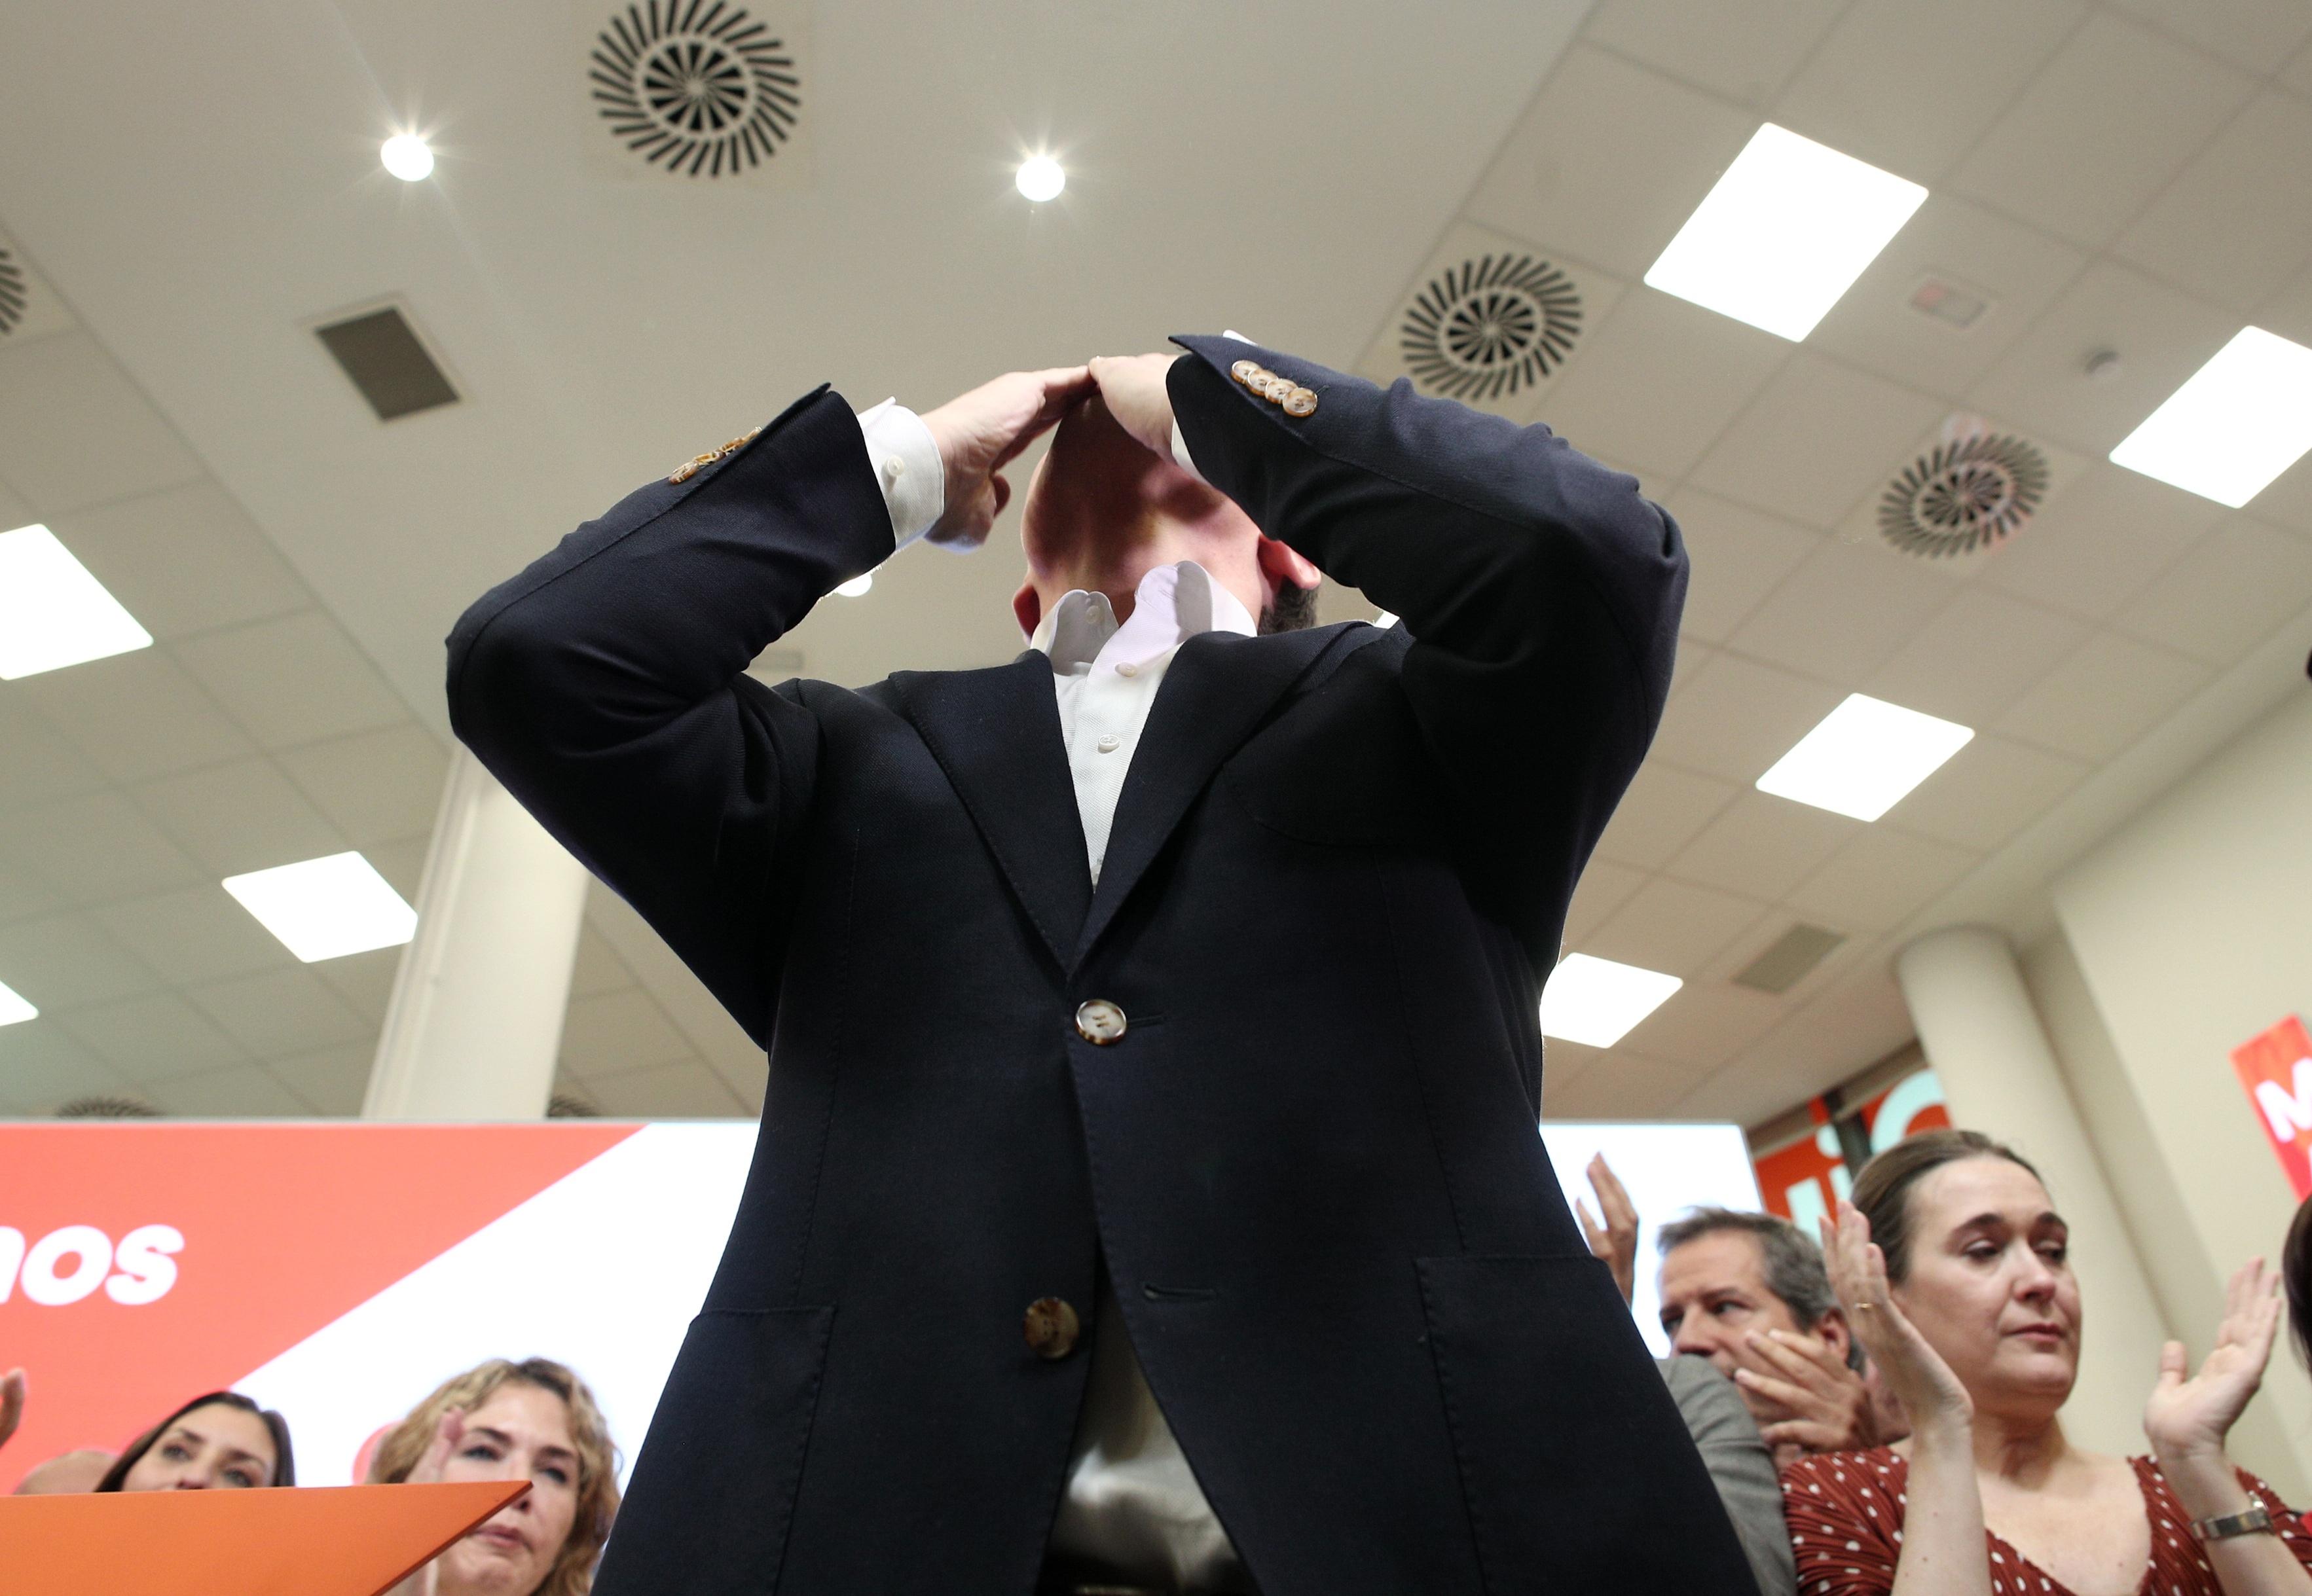 El presidente de Ciudadanos Albert Rivera lanza un beso en señal de agradecimiento tras anunciar su dimisión como presidente de Ciudadanos. Europa Press.